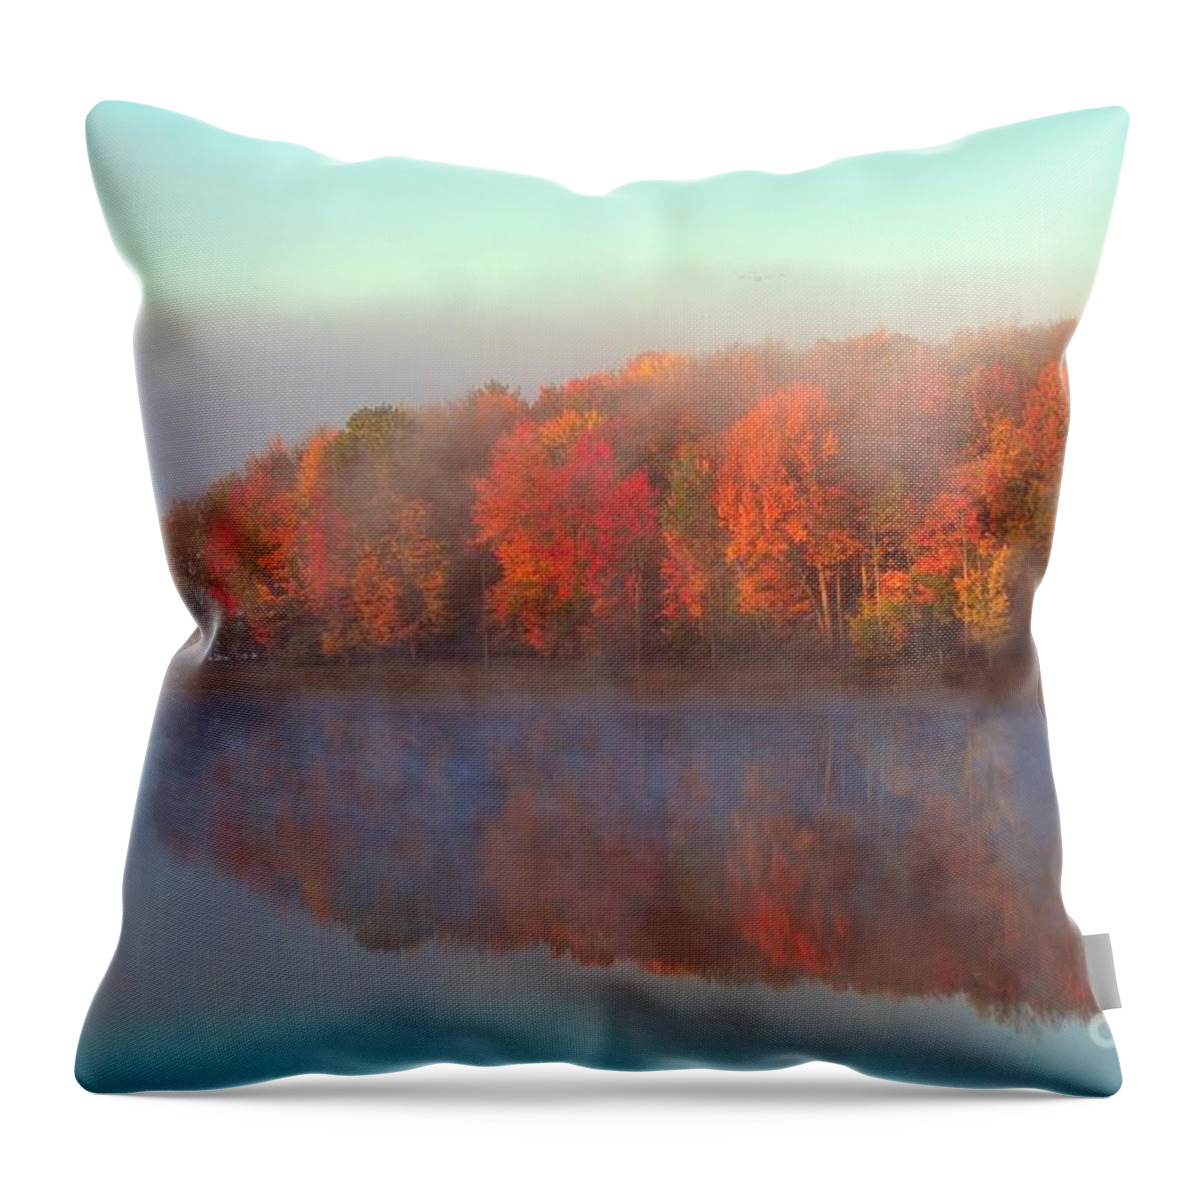 Stoneledge Lake Throw Pillow featuring the photograph Stoneledge Lake in Autumn Fog by Terri Gostola